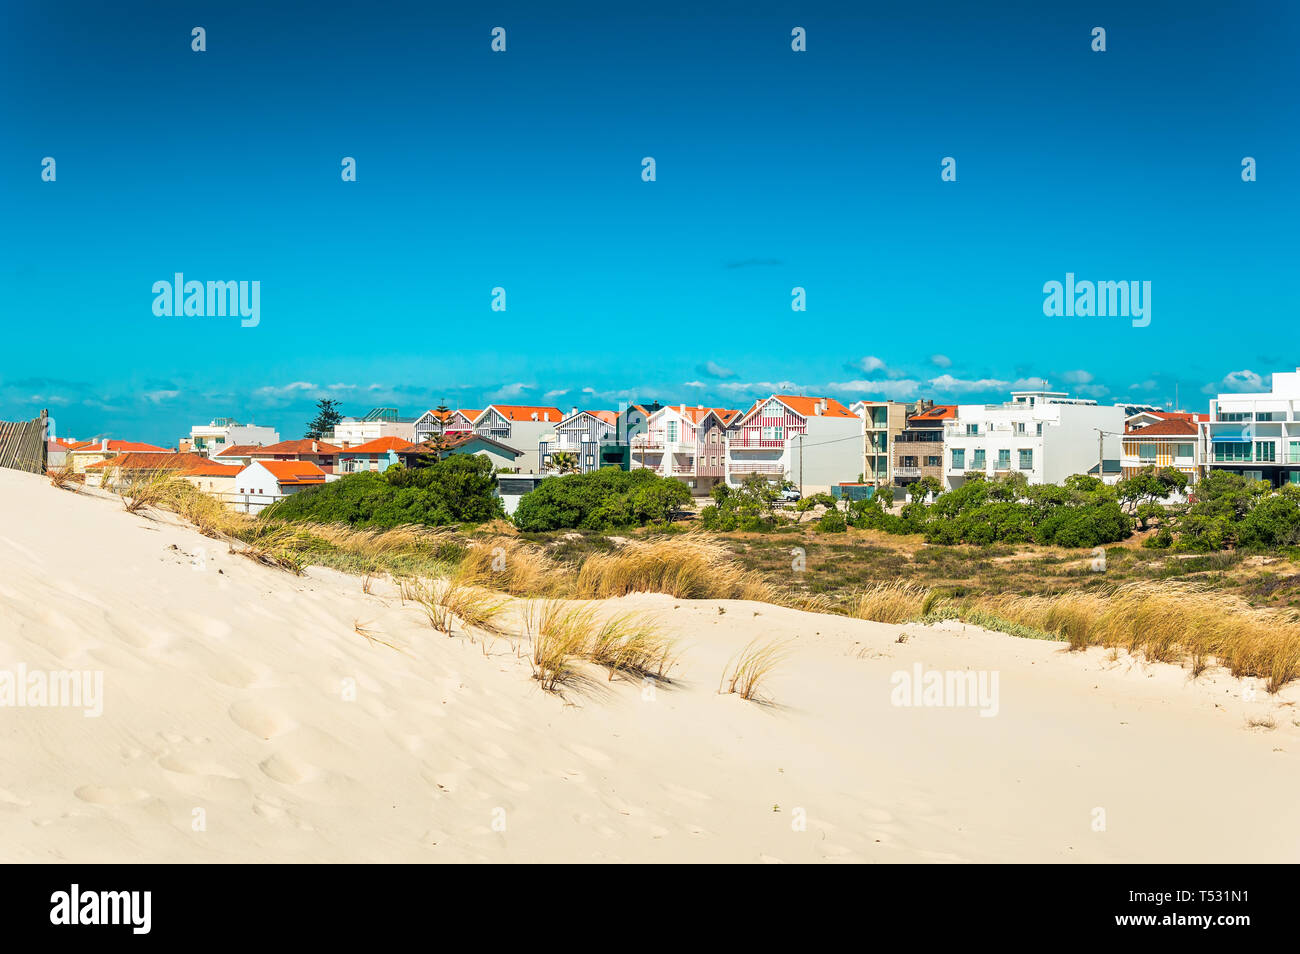 Costa Nova, Portugal : : plage des dunes de sable et des maisons à rayures colorées. Costa Nova do Prado est un village beach resort sur la côte atlantique près de Aveiro. Banque D'Images